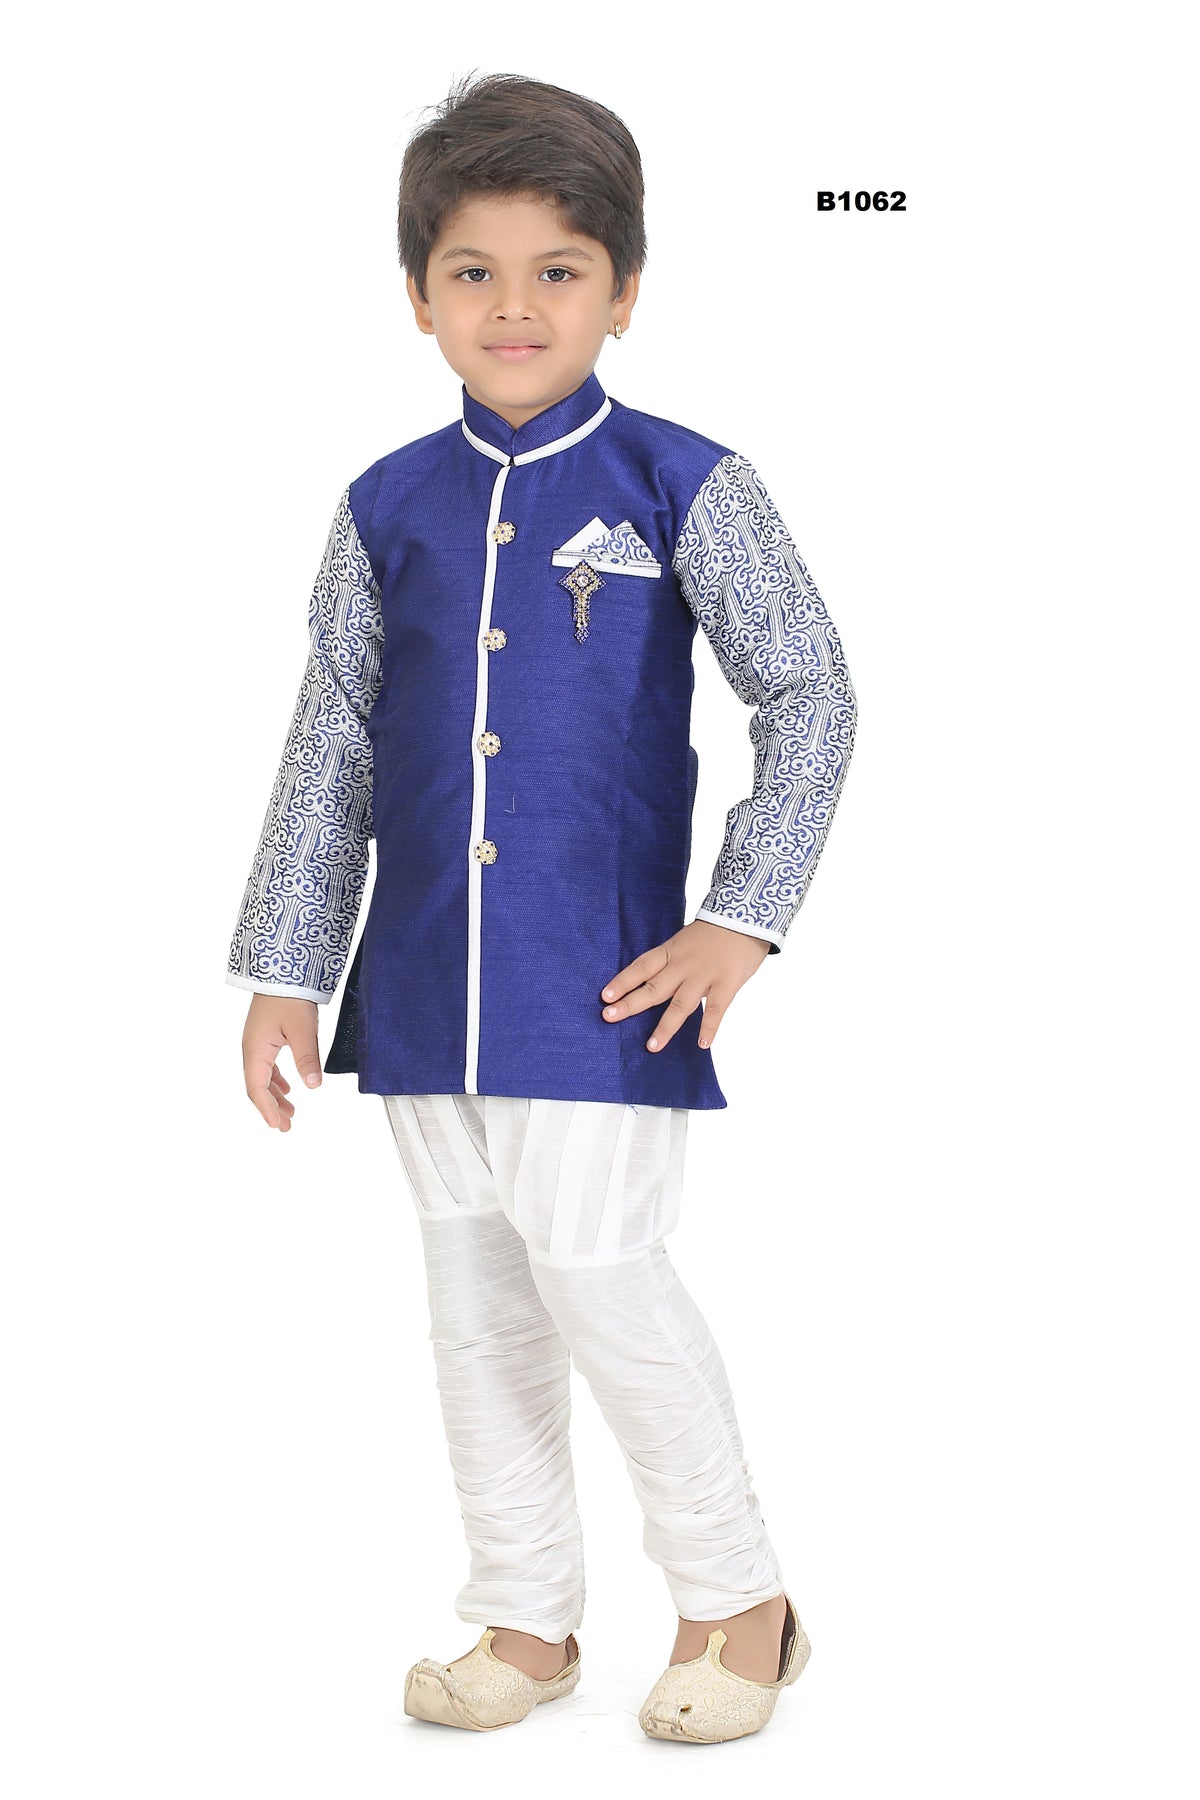 B1062 - Royal blue cute Sherwani Kurtha Pajama for kids